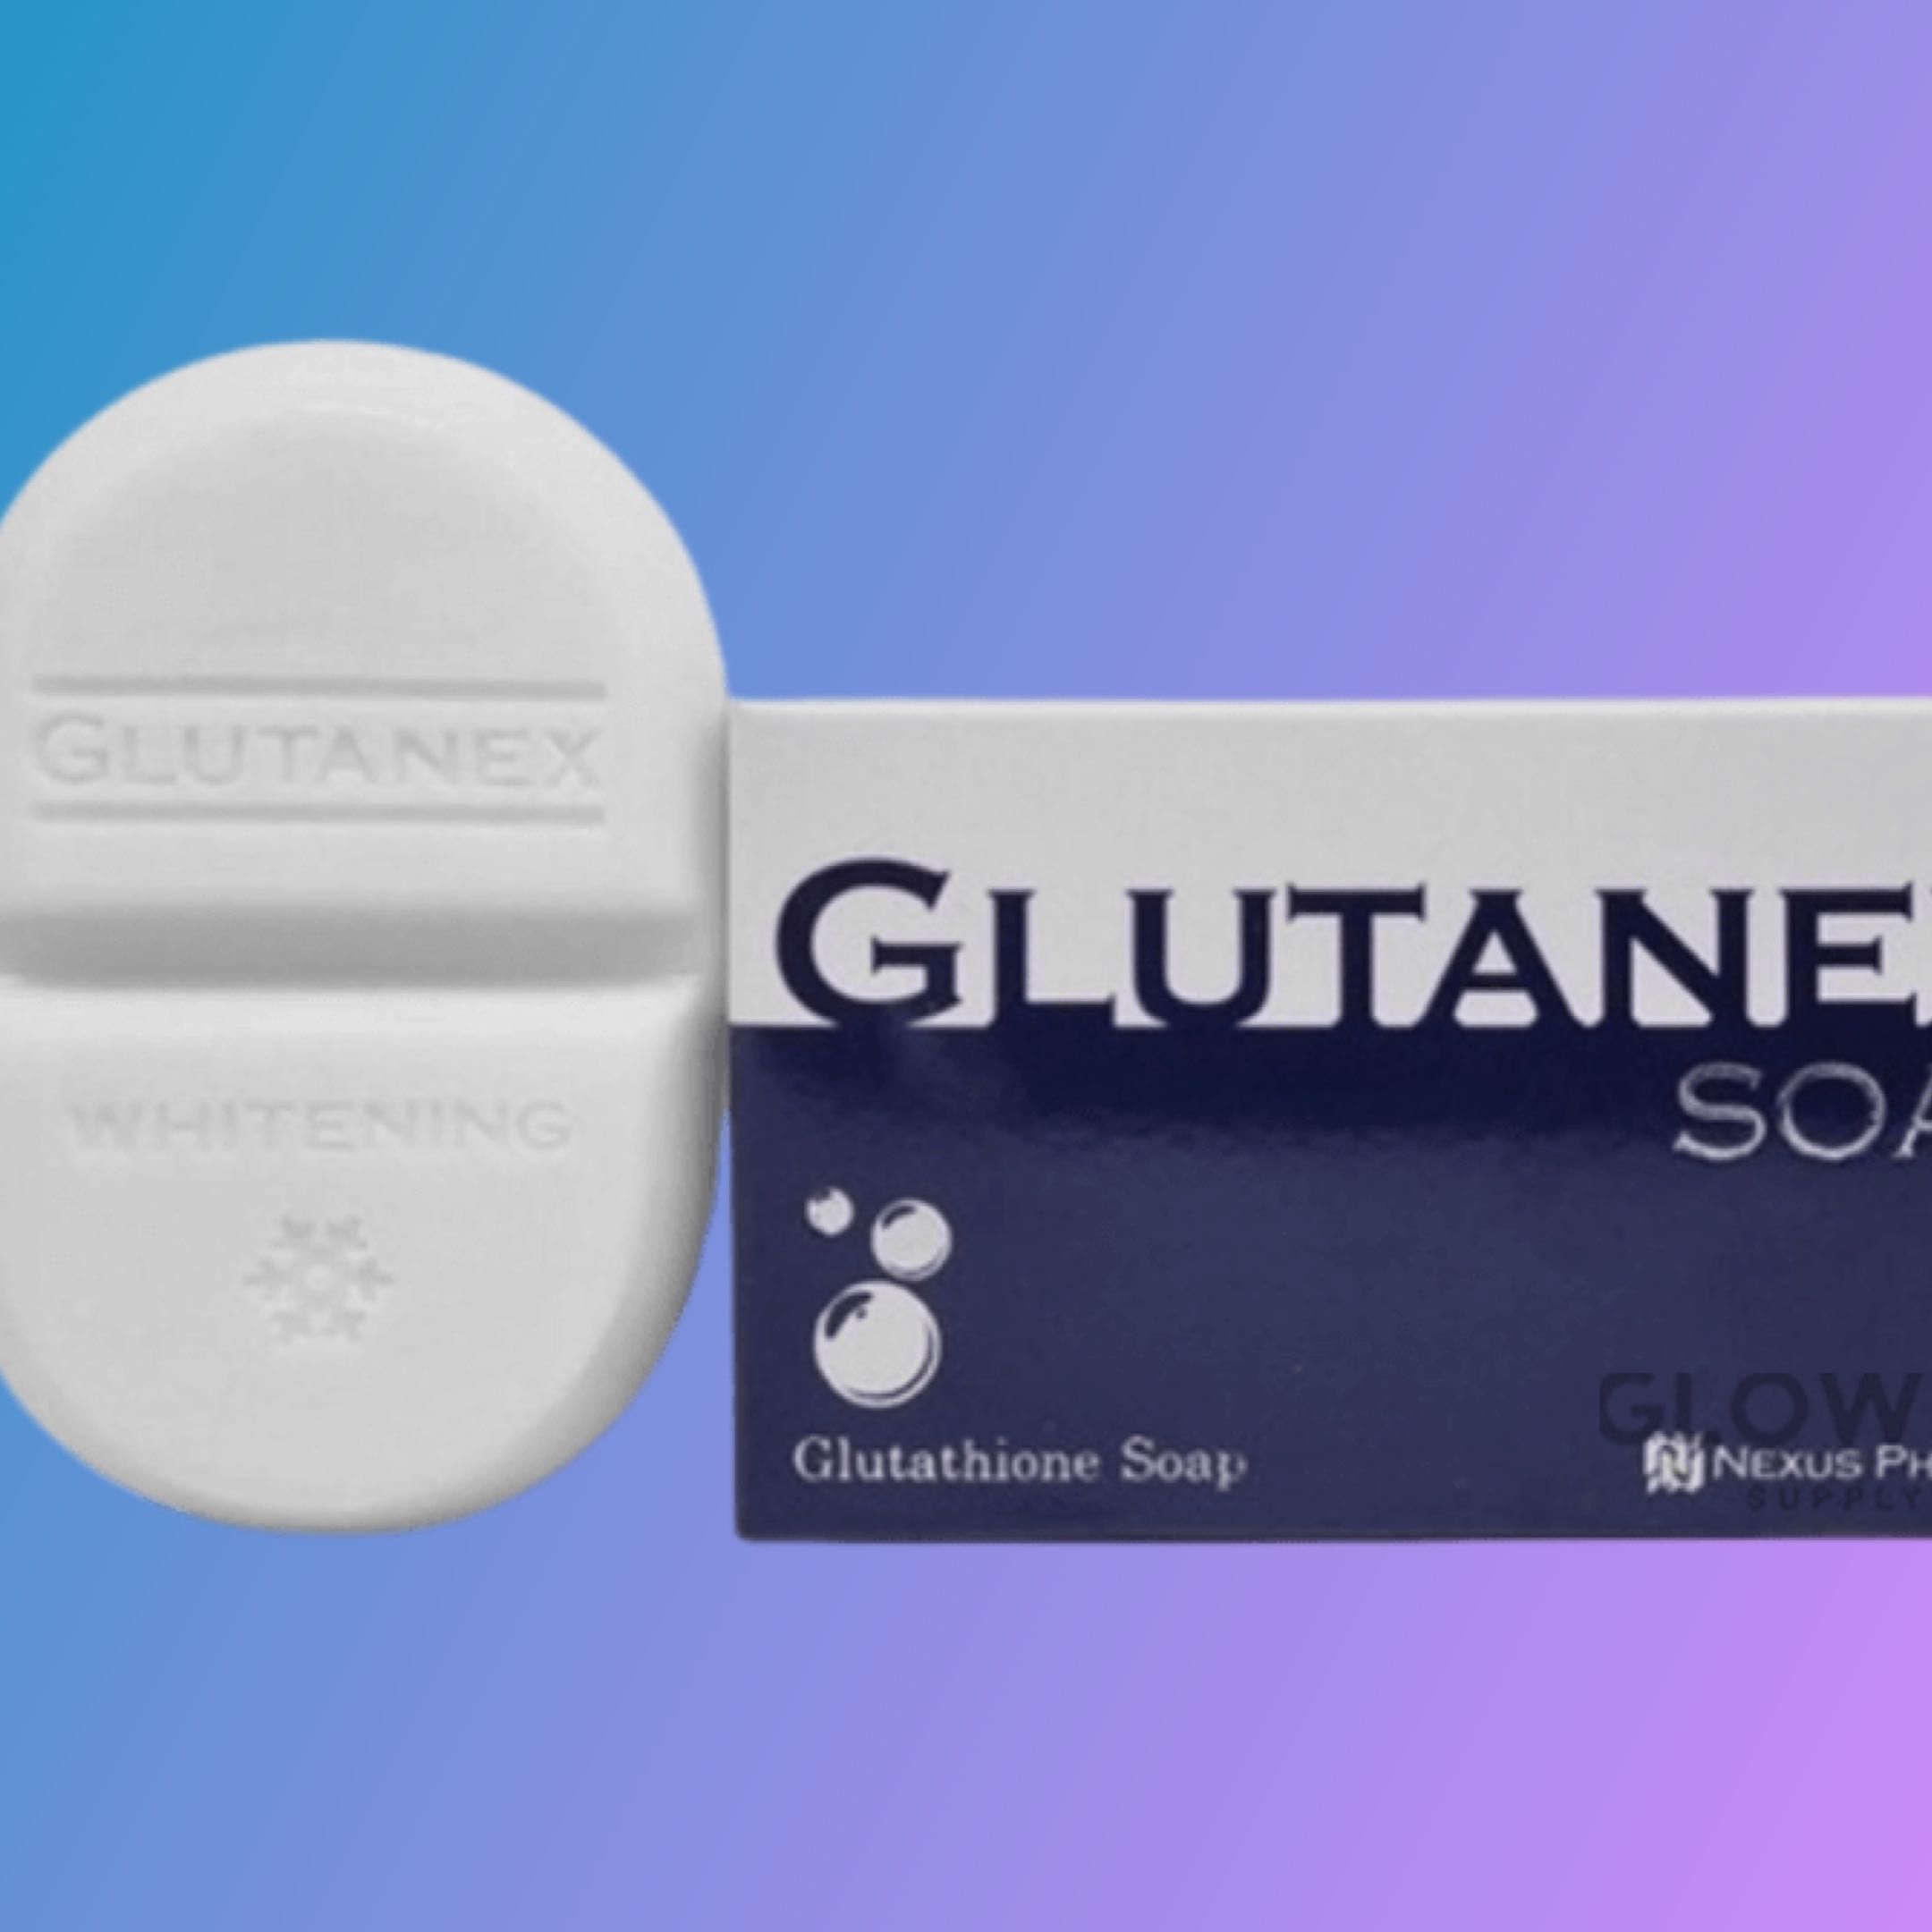 GROUPON GLUTANEX SOAP OFFER portfolio